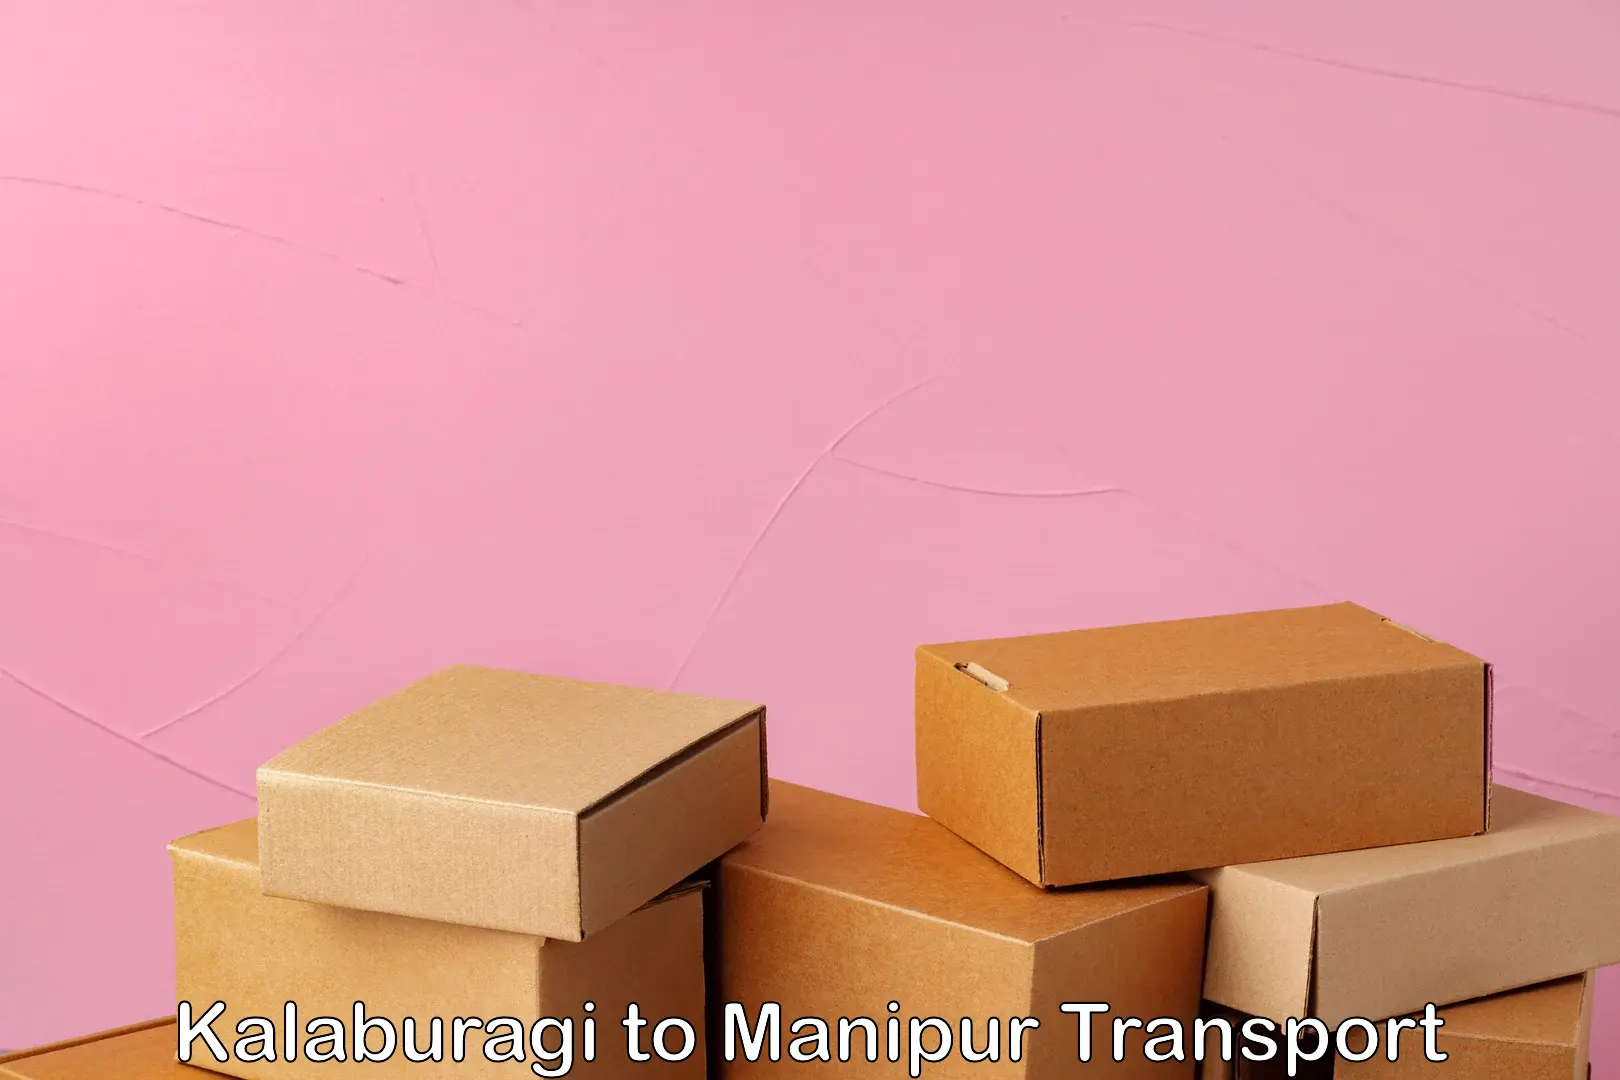 Online transport service Kalaburagi to Manipur